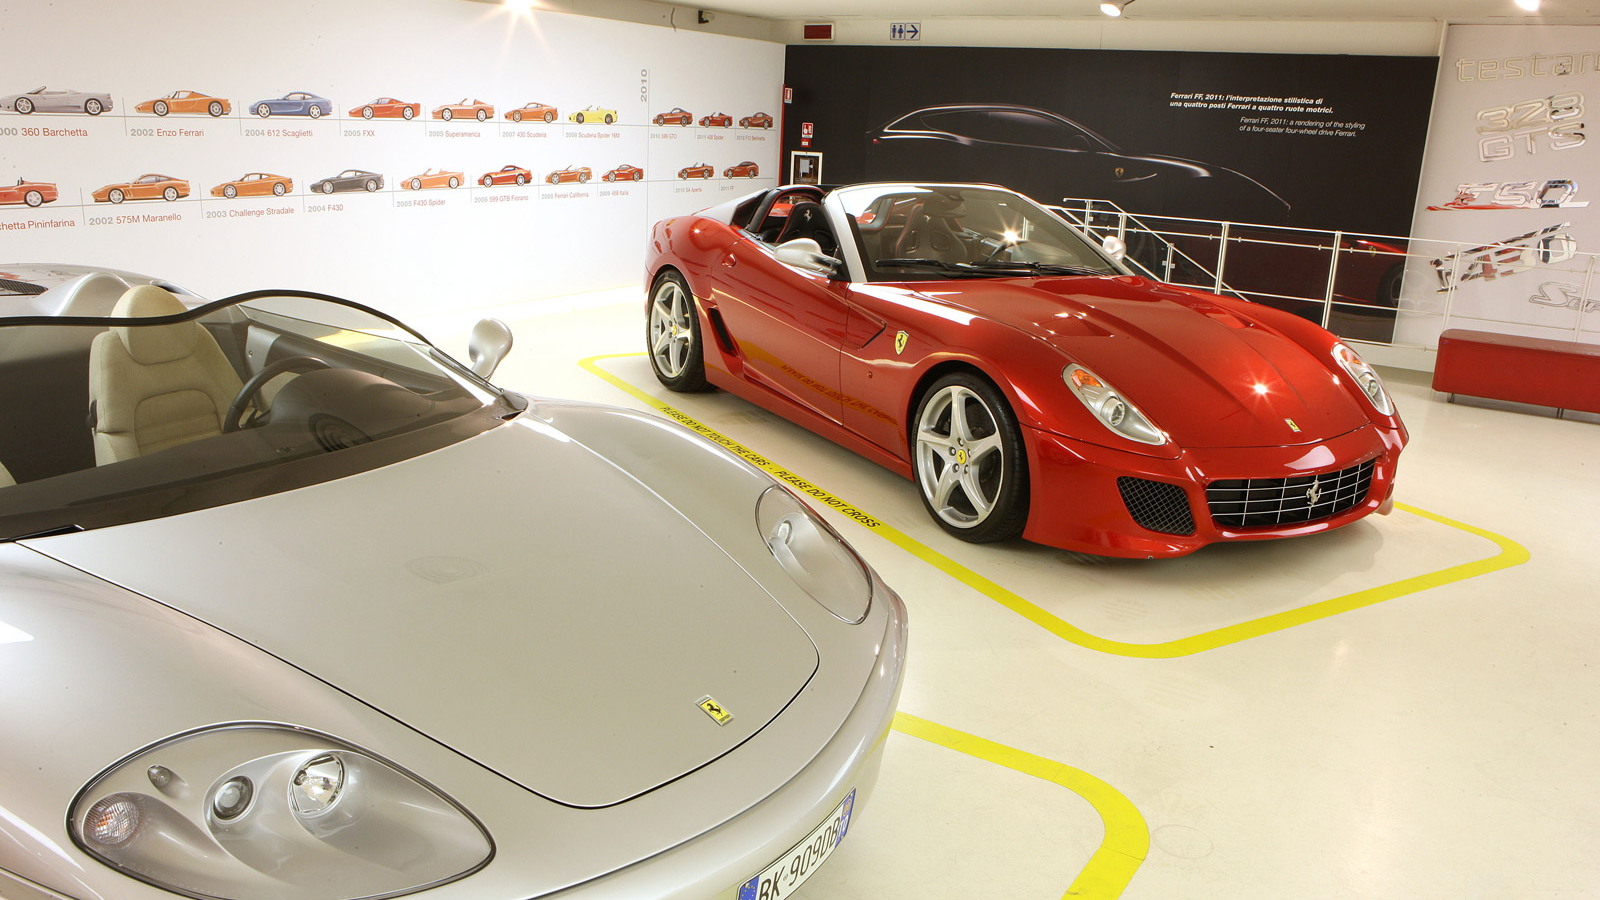 The Greatest Ferraris of Sergio Pininfarina exhibition at the Ferrari Museum, Maranello